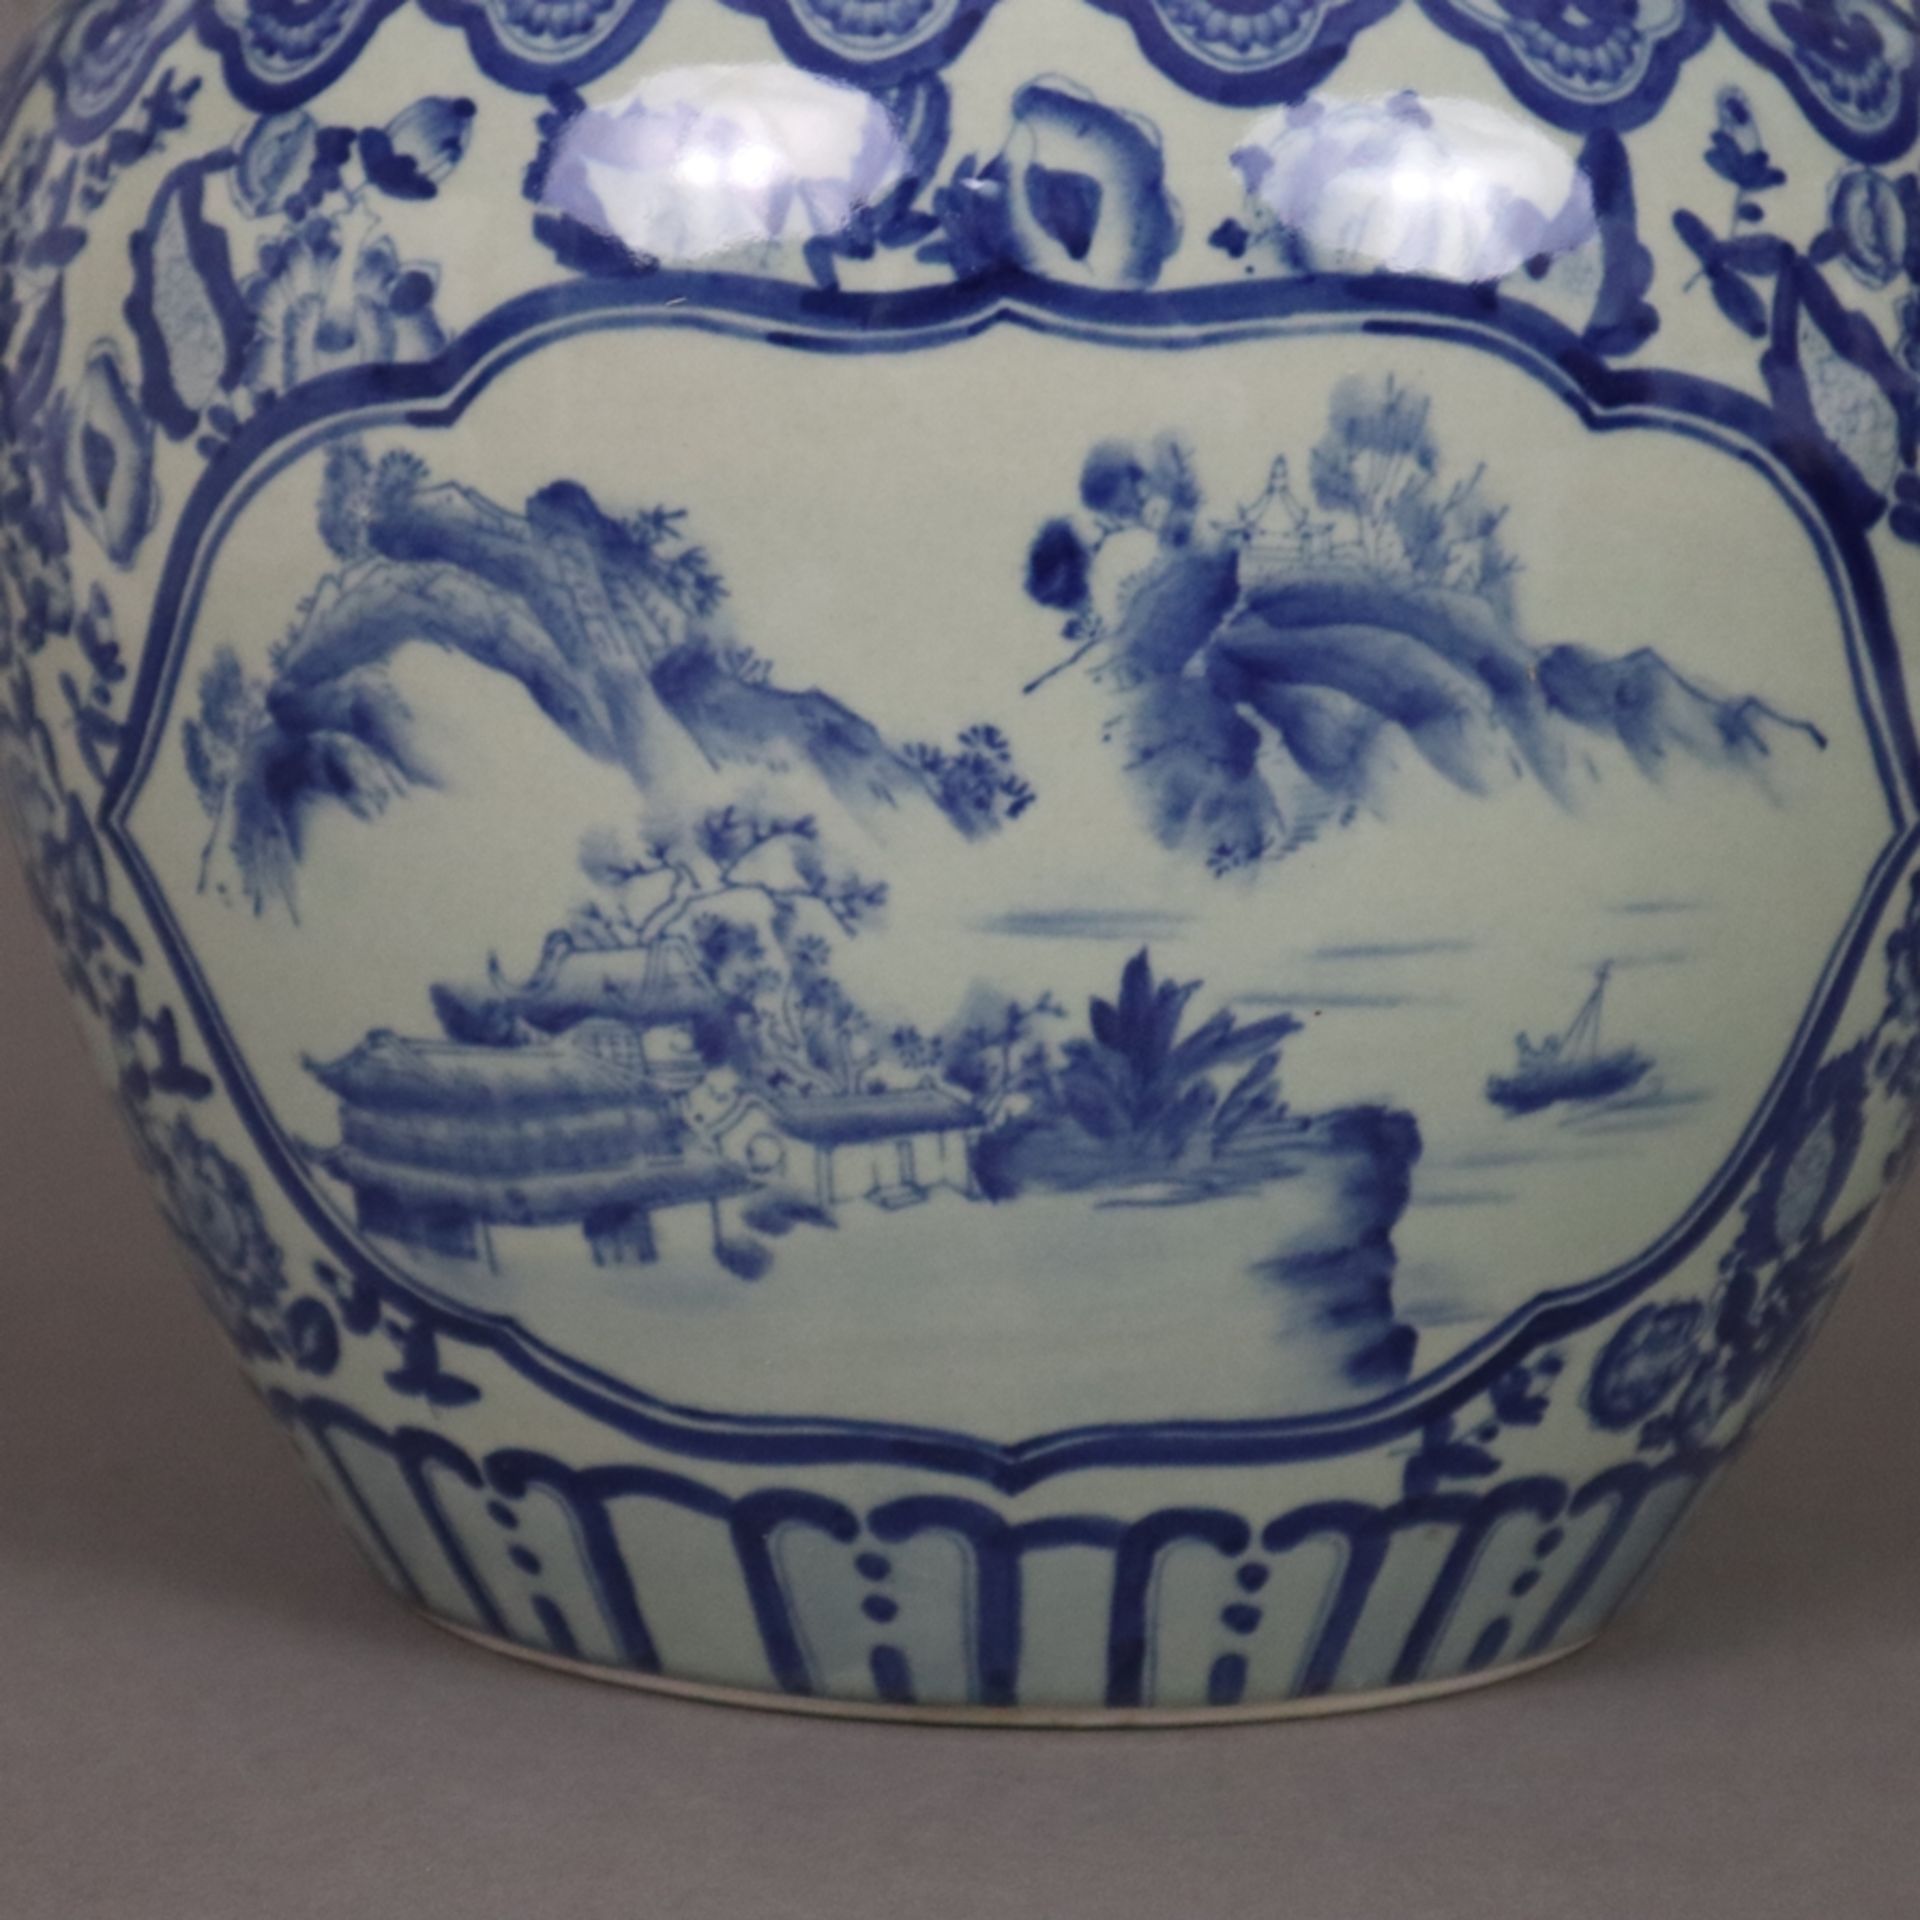 Blau-weißer Cachepot - China, 20. Jh., Porzellan, blau-weiß bemalt, bauchiger Korpus mit eingezogen - Bild 6 aus 9